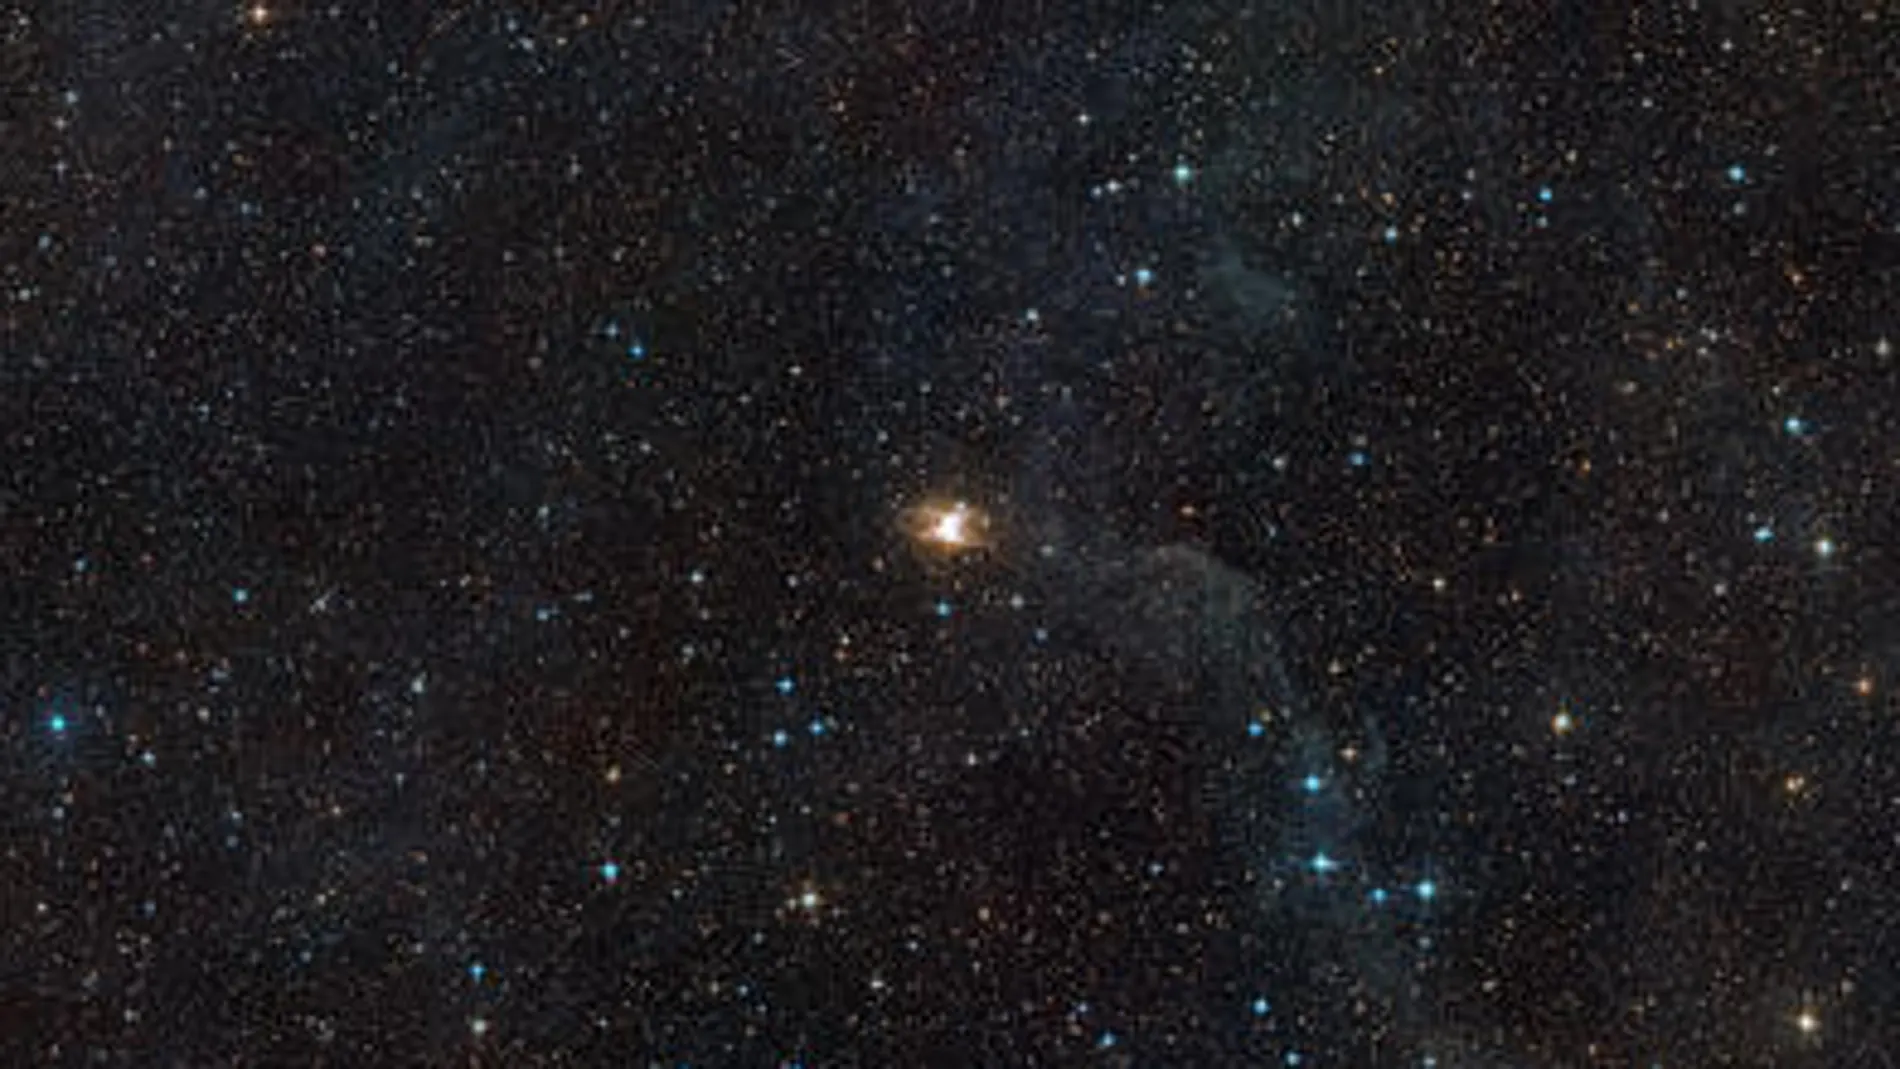 Imagen de la zona del cielo que rodea a la nebulosa Toby Jug captada por el telescopio VLT